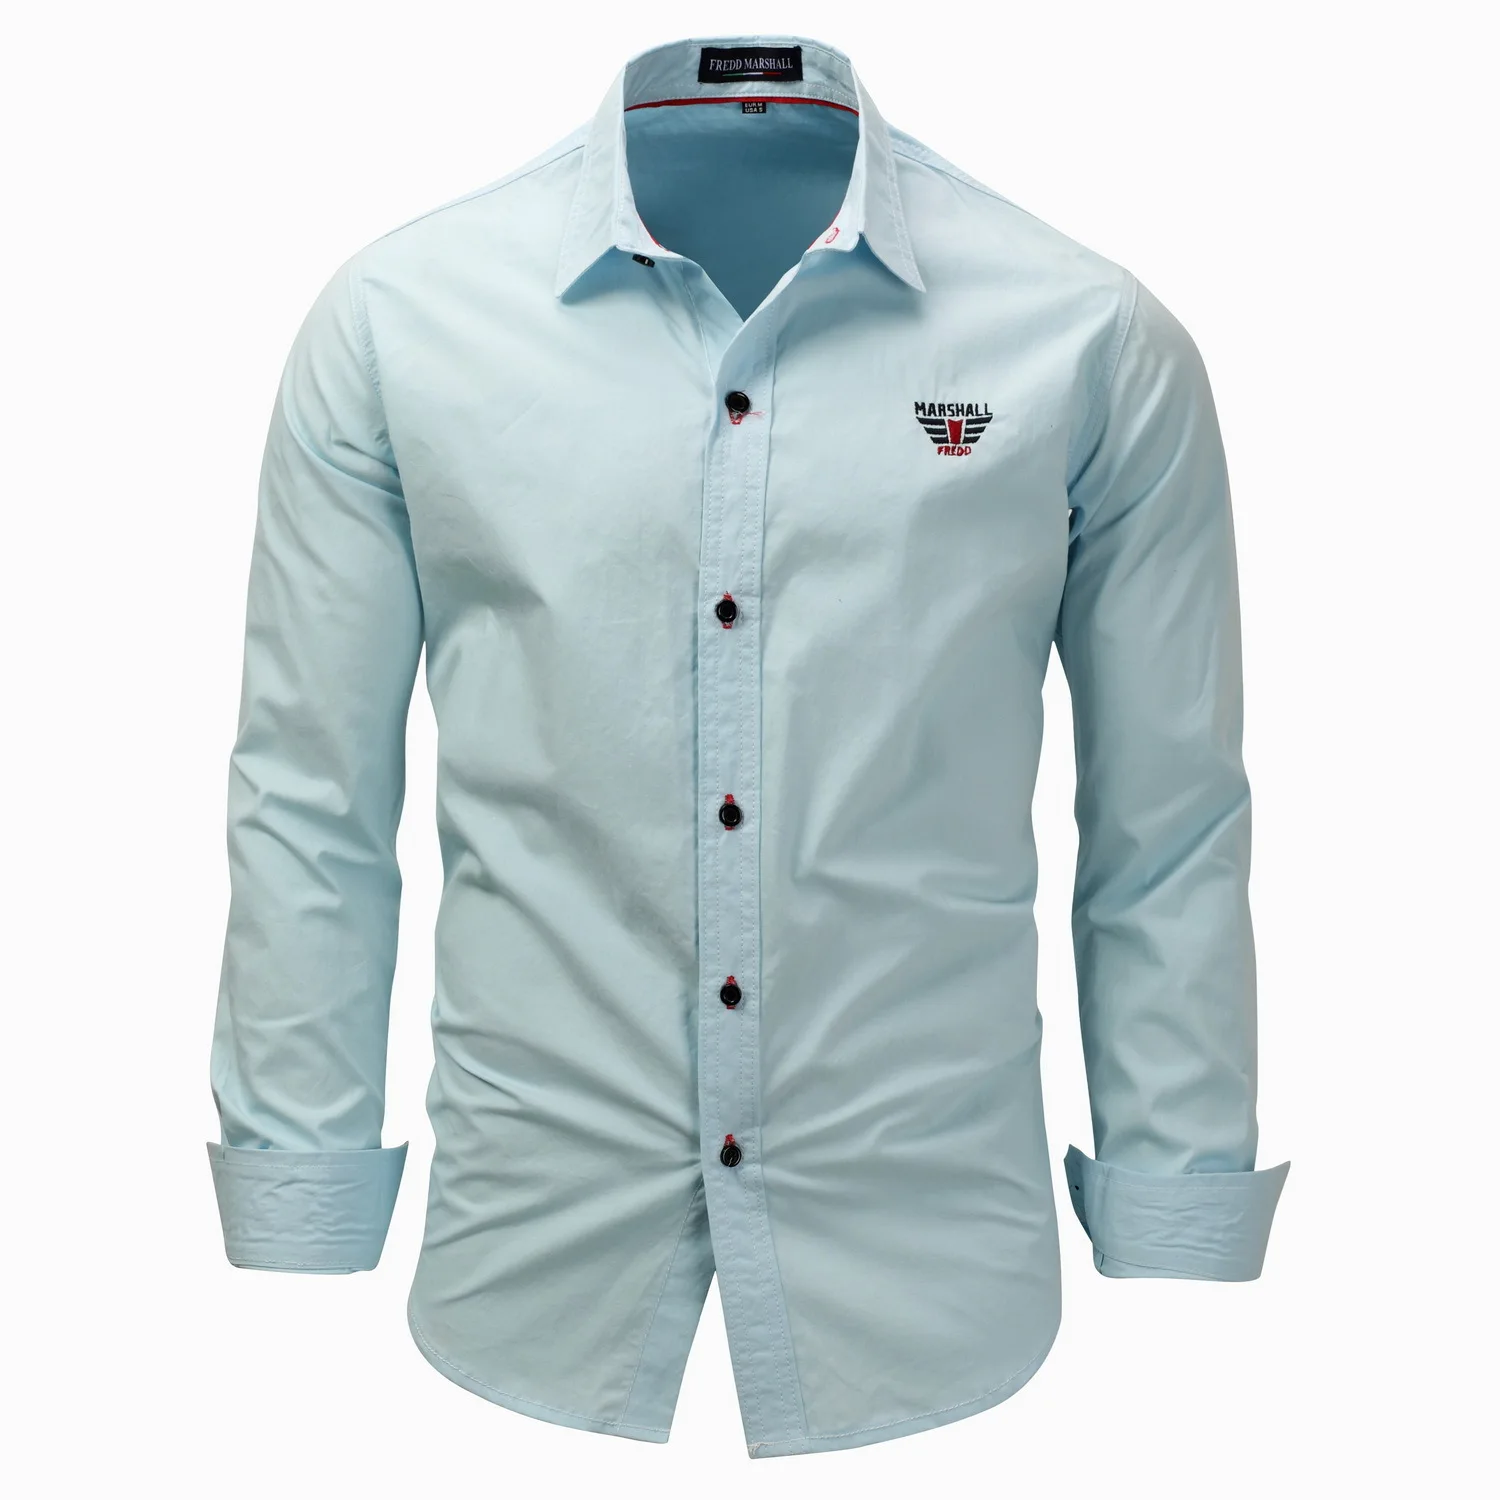 VOMINT 209 новые мужские рубашки бизнес с длинным рукавом Turn-Down воротник хлопок мужская рубашка Slim Fit популярные дизайны FM118